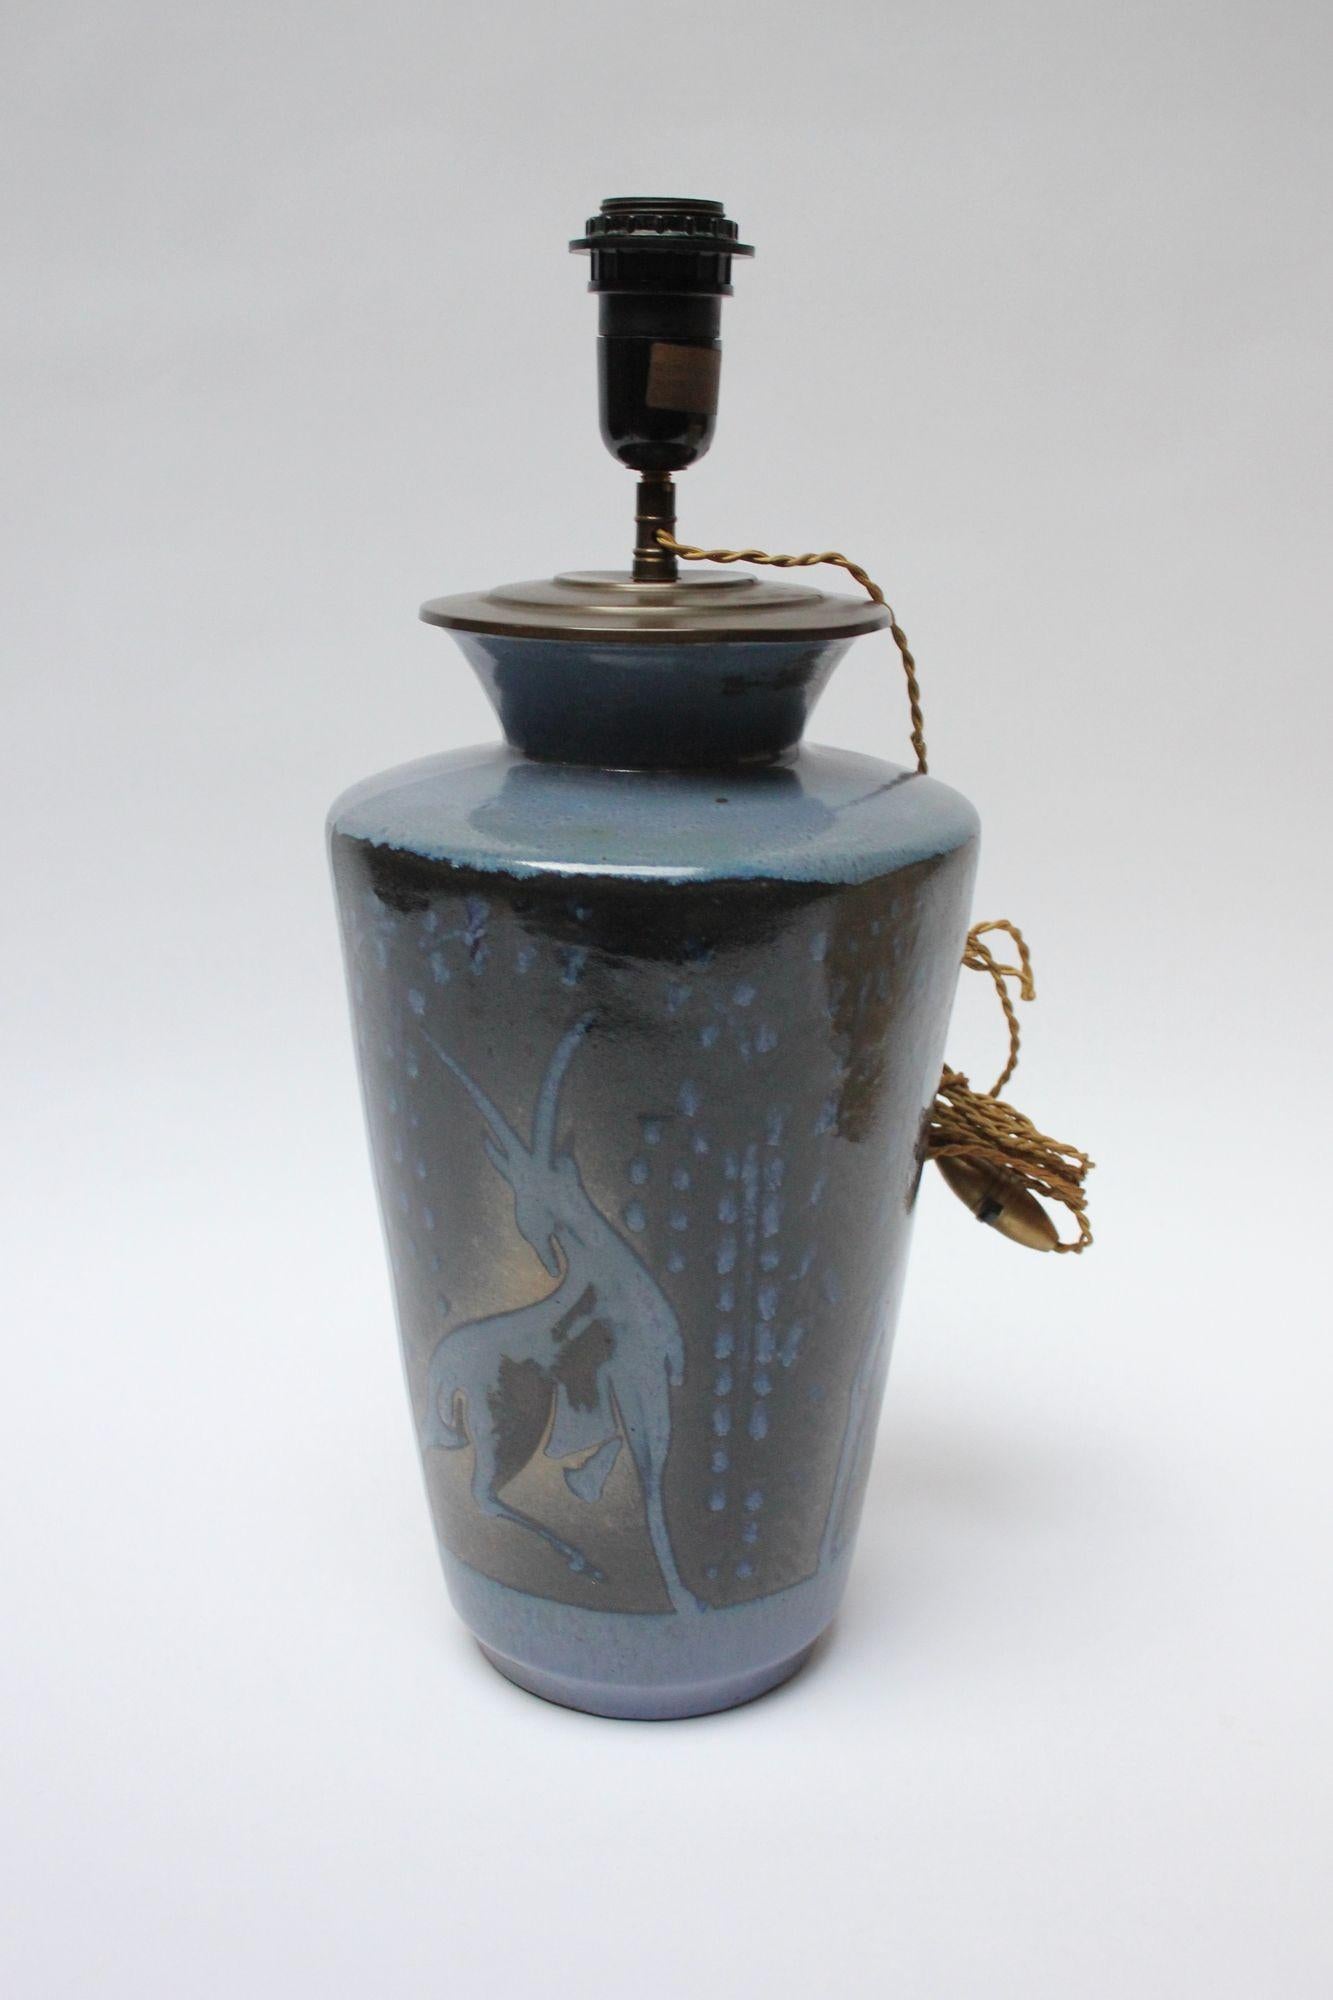 Art-Déco-Keramiklampe aus den 1930er Jahren, die einen Hirsch, ein Reh und eine Bergziege inmitten einer Trauerweide mit Blattwerk darstellt. Sie stammt aus dem renommierten Keramikstudio Atelier Primavera, das zum Pariser Kaufhaus Le Printemps